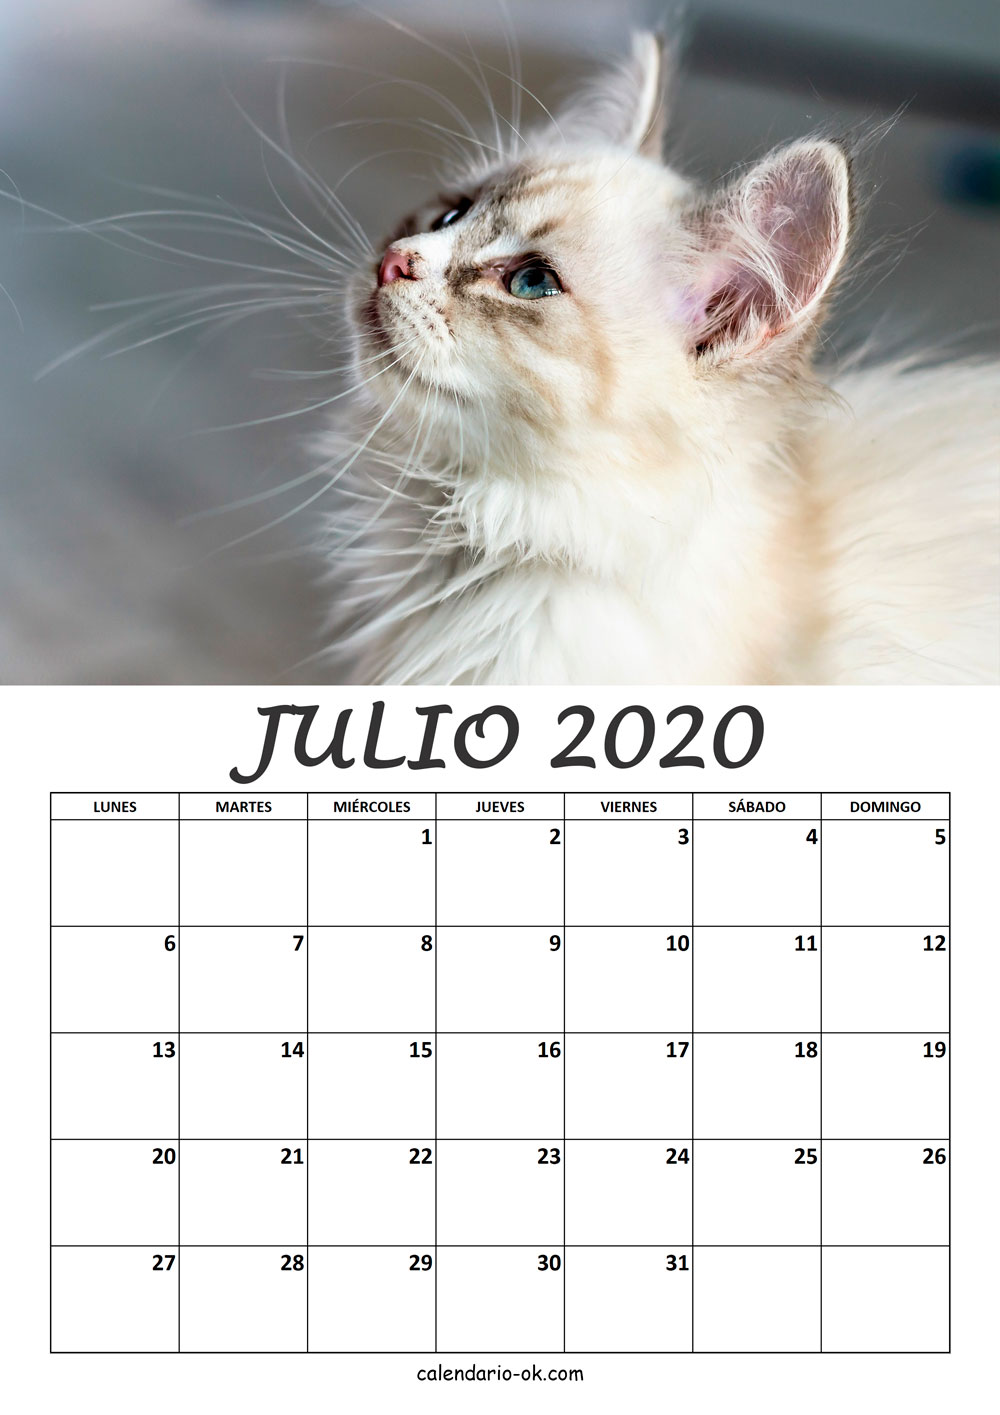 Calendario JULIO 2020 de GATOS